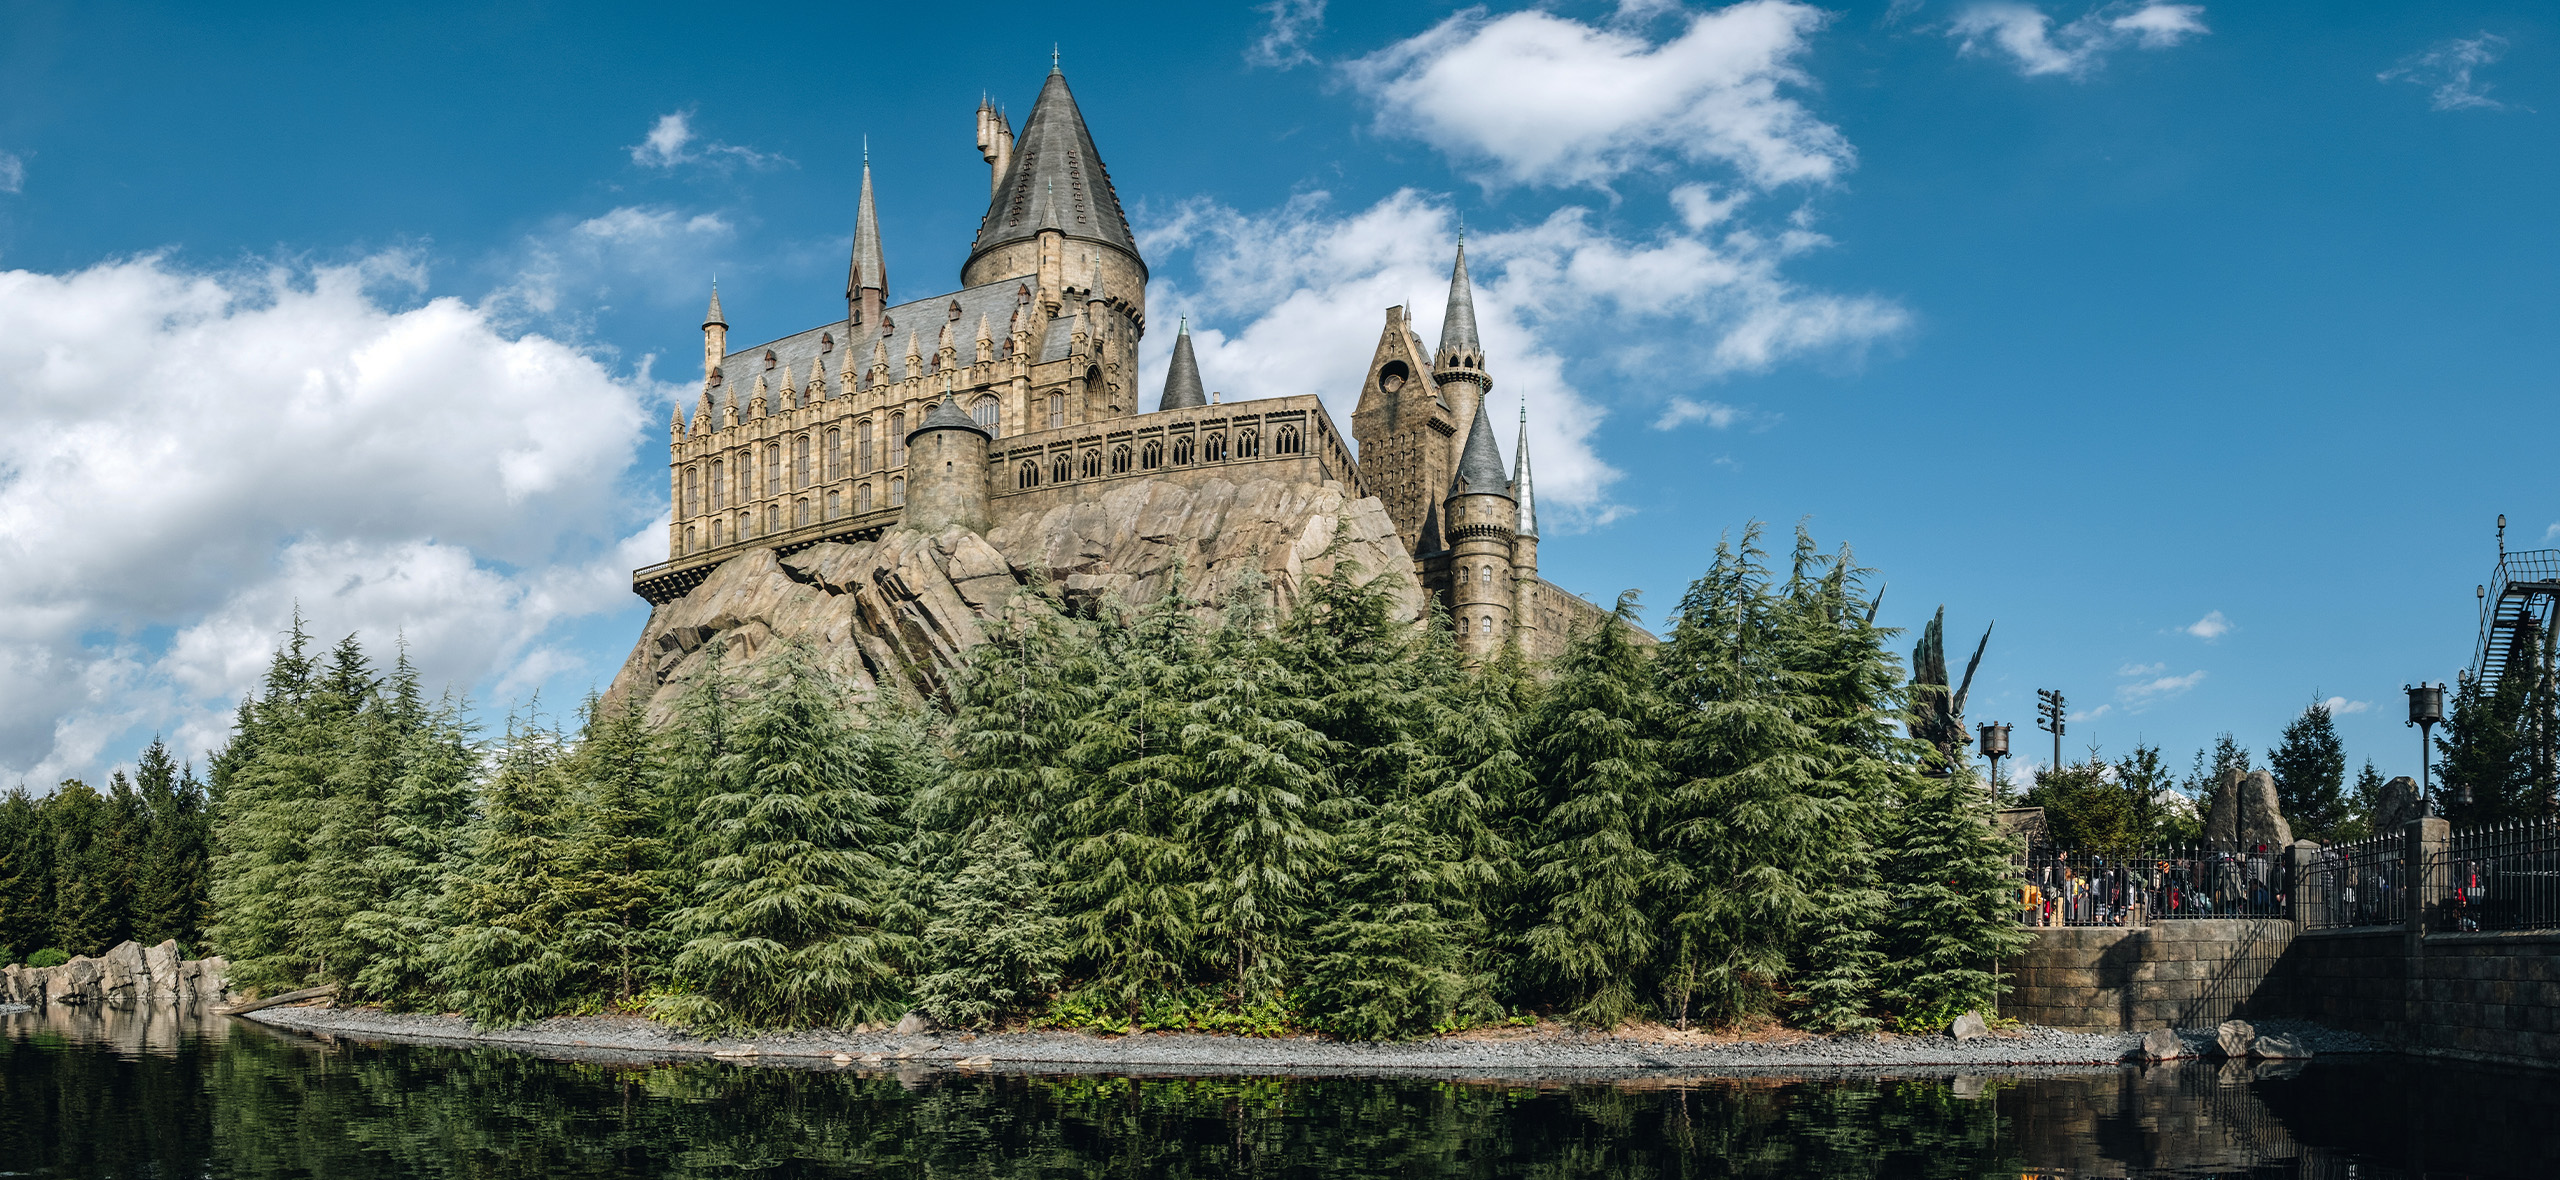 8 парков и музеев Гарри Поттера, в которых стоит побывать фанатам саги